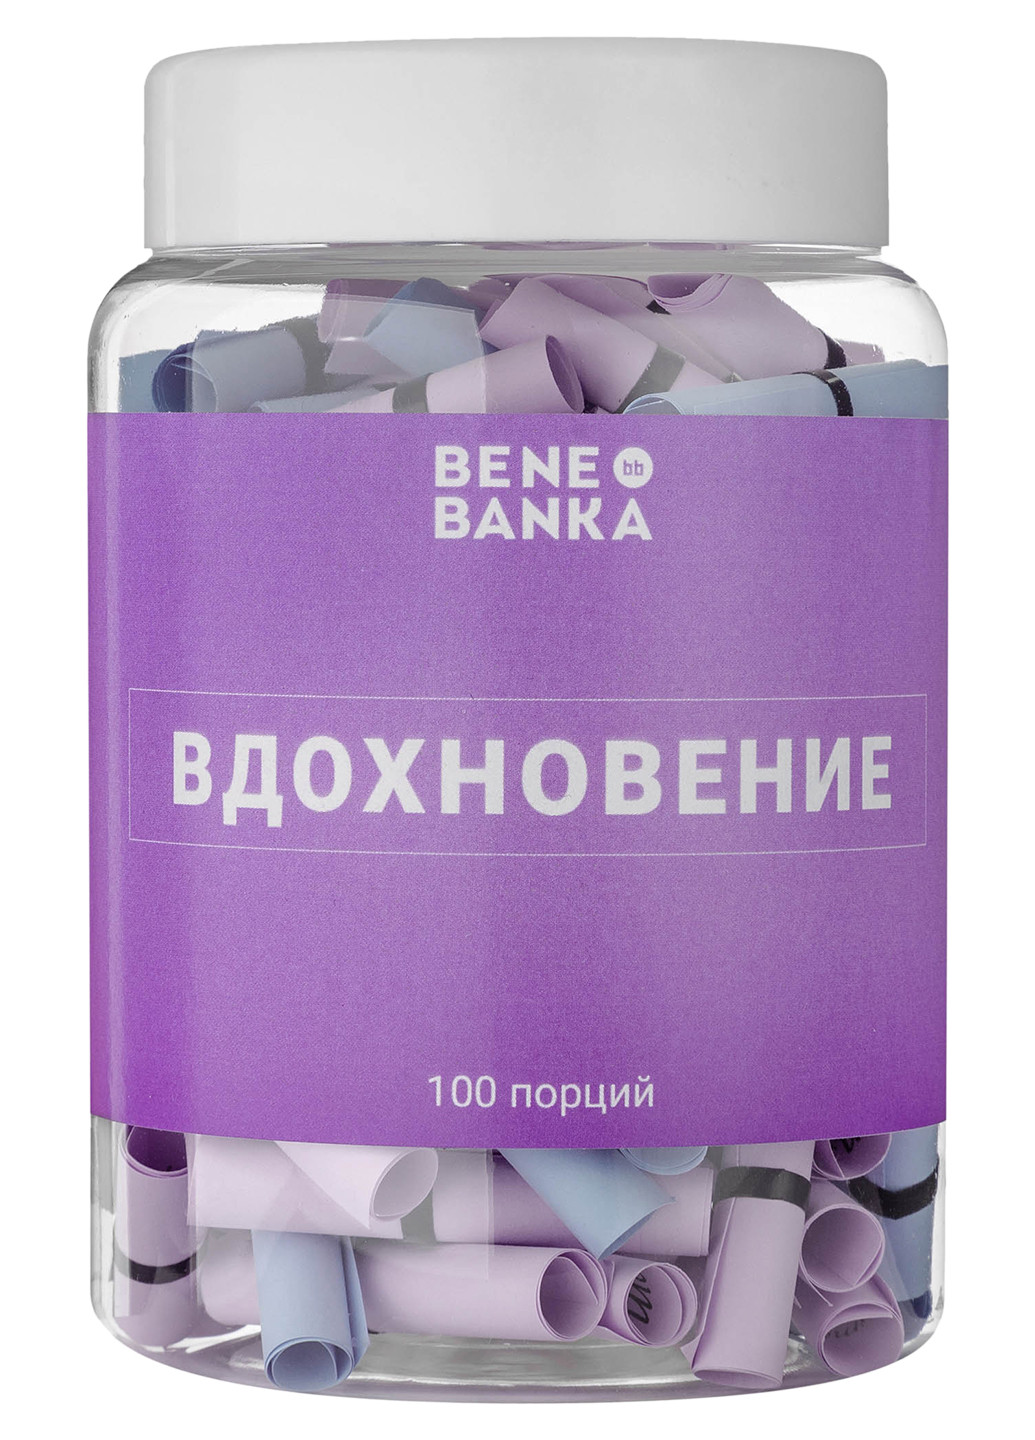 Баночка с записками "Вдохновение" русский язык Bene Banka (200653600)